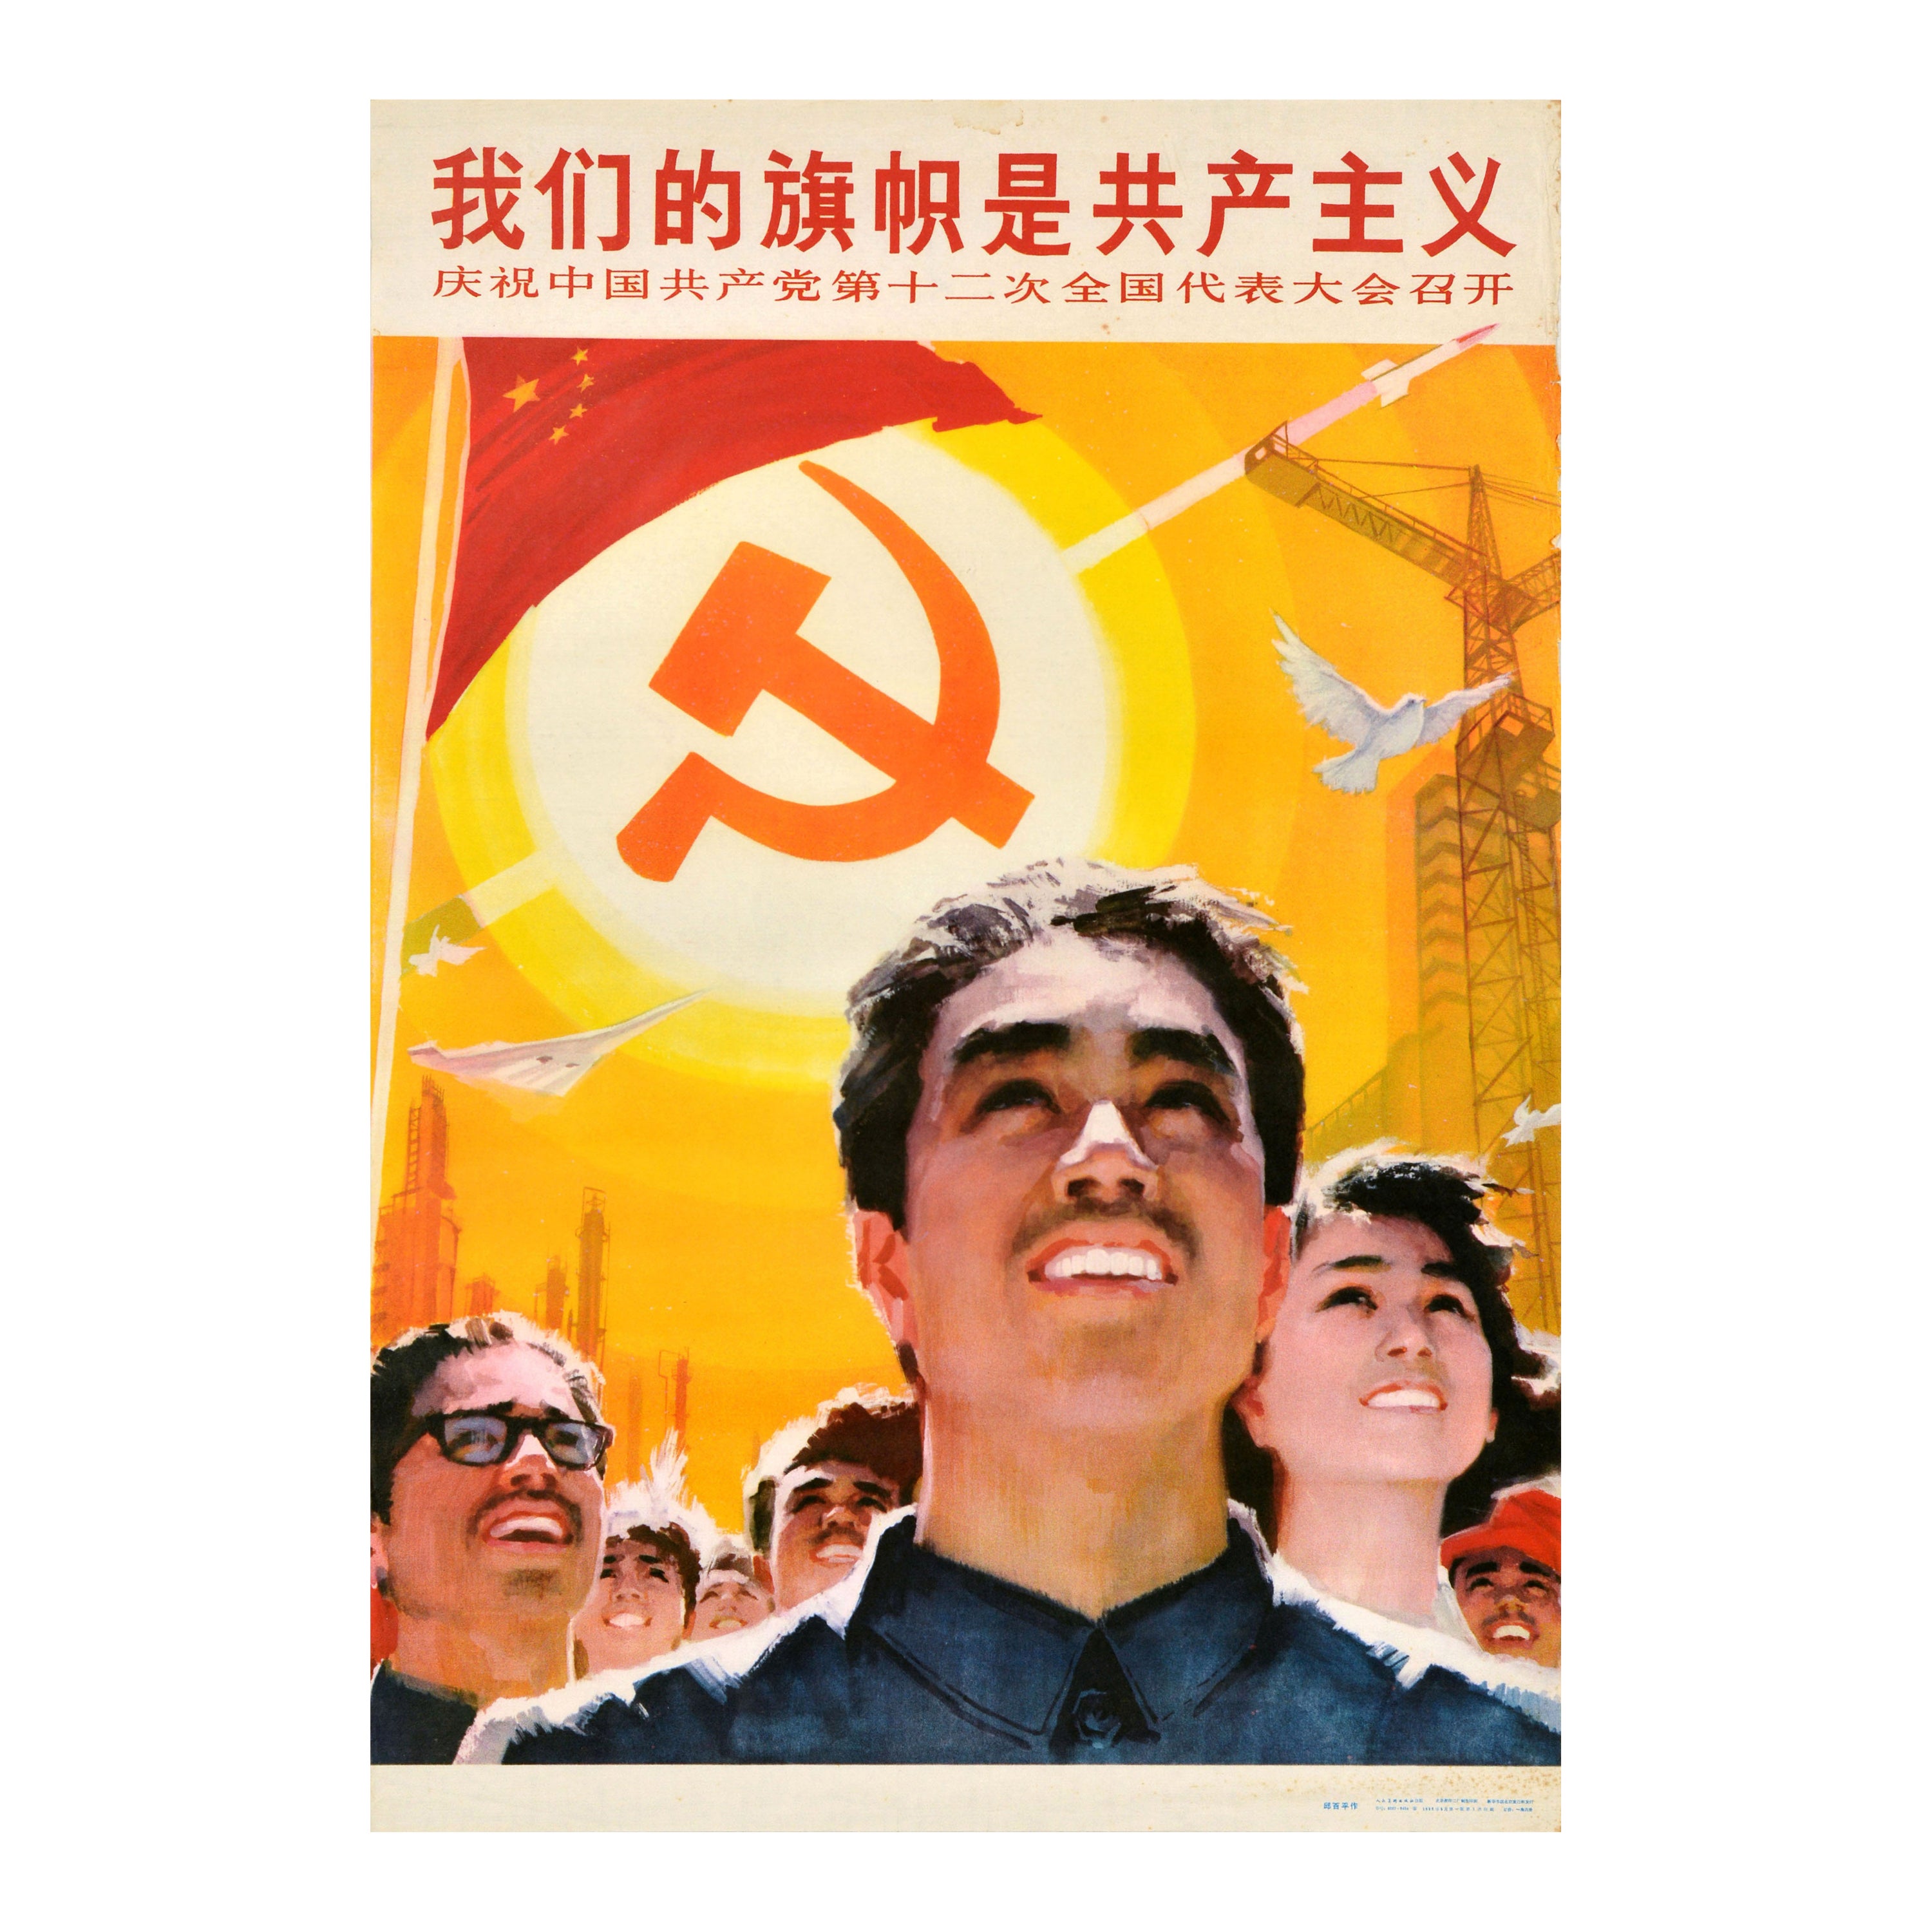 Affiche de propagande de la parti communiste chinoise vintage « Our Flag Is Communism »